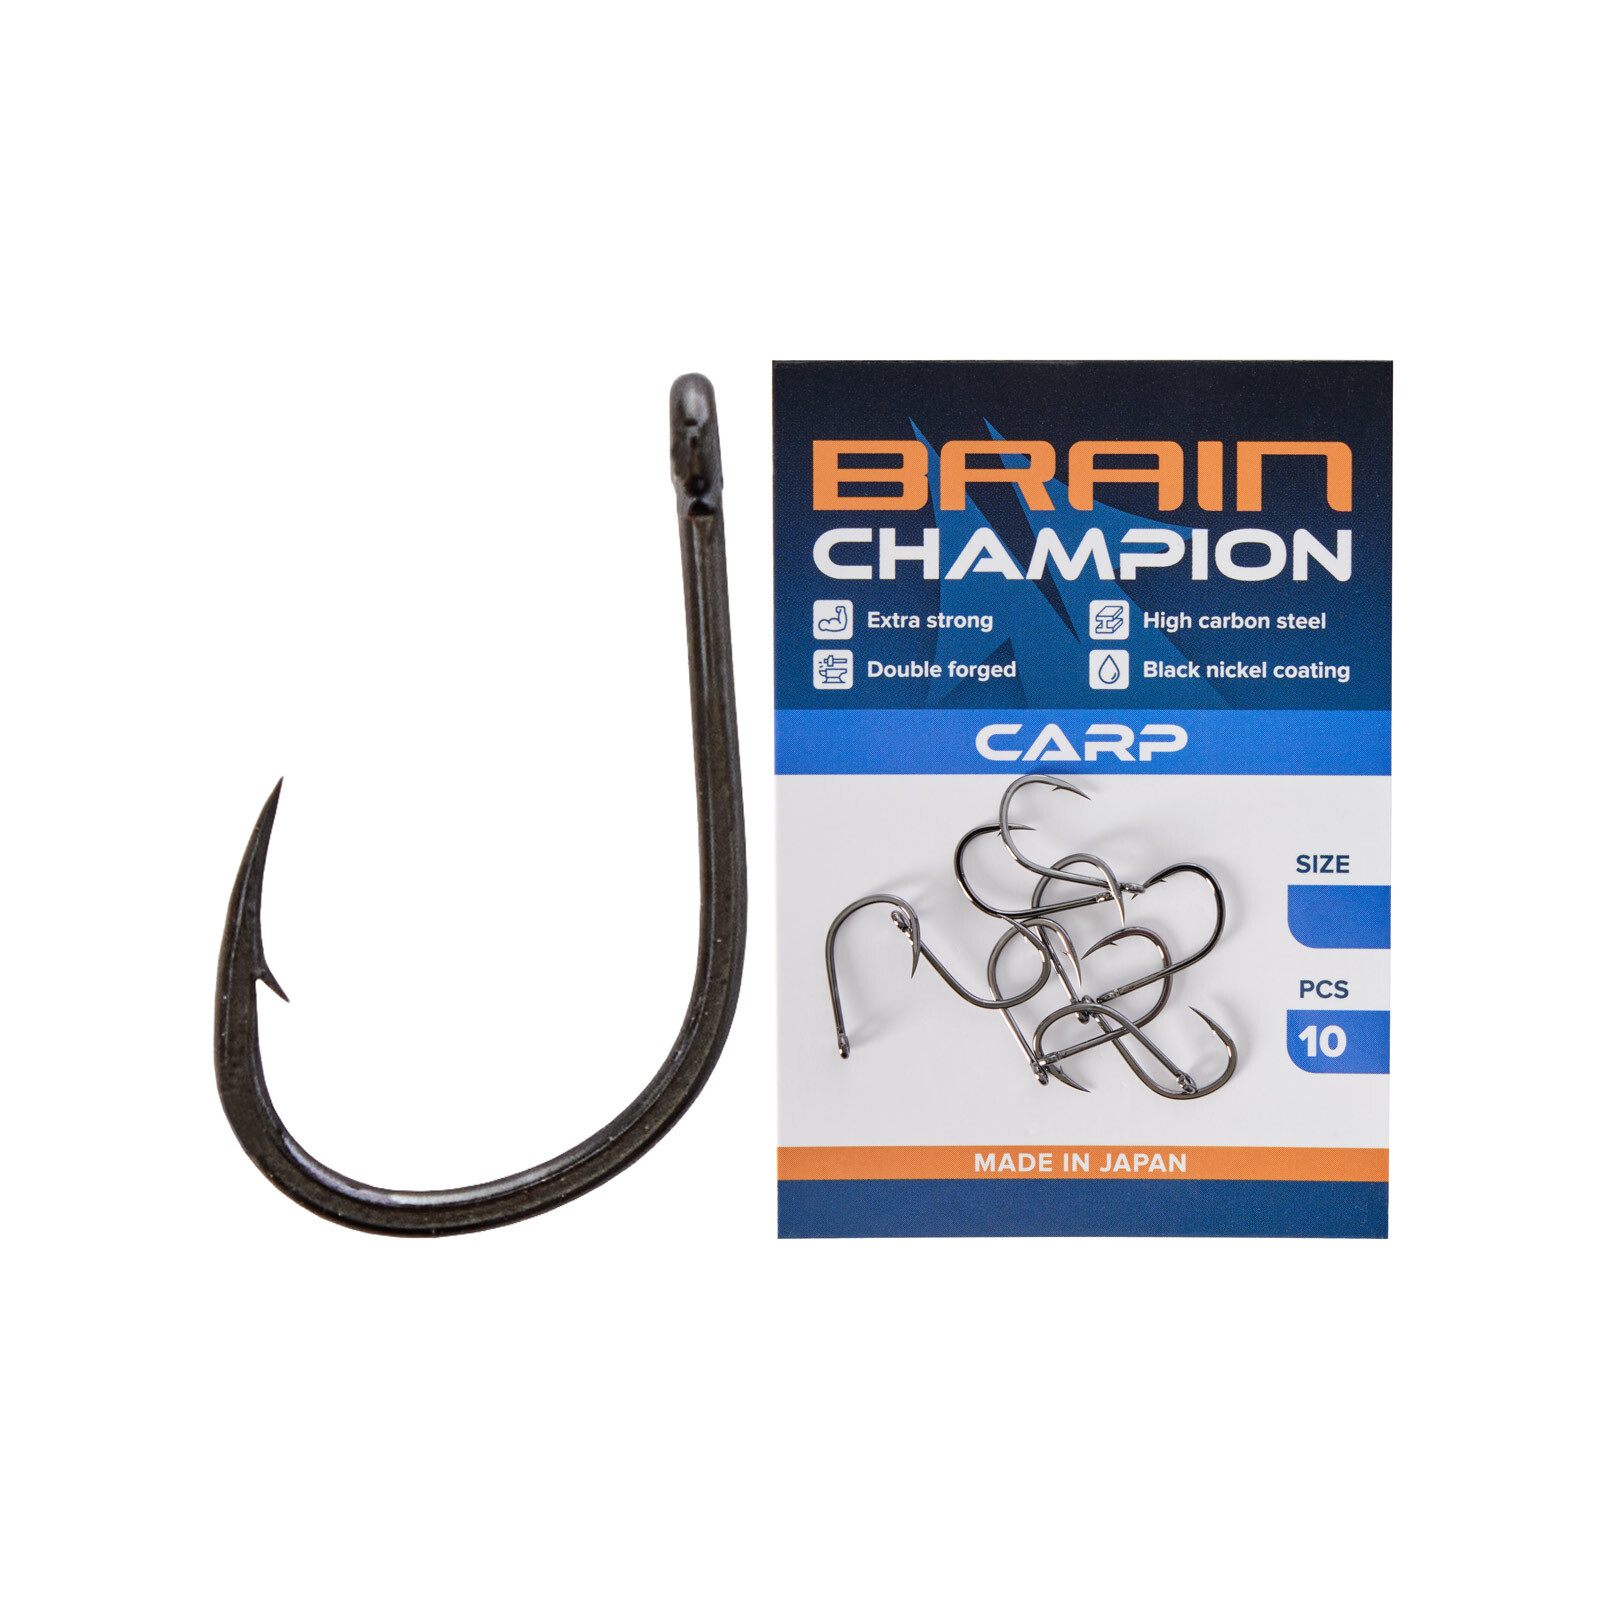 Гачок Brain fishing Champion Carp 6 (10 шт/уп) (1858.54.31)